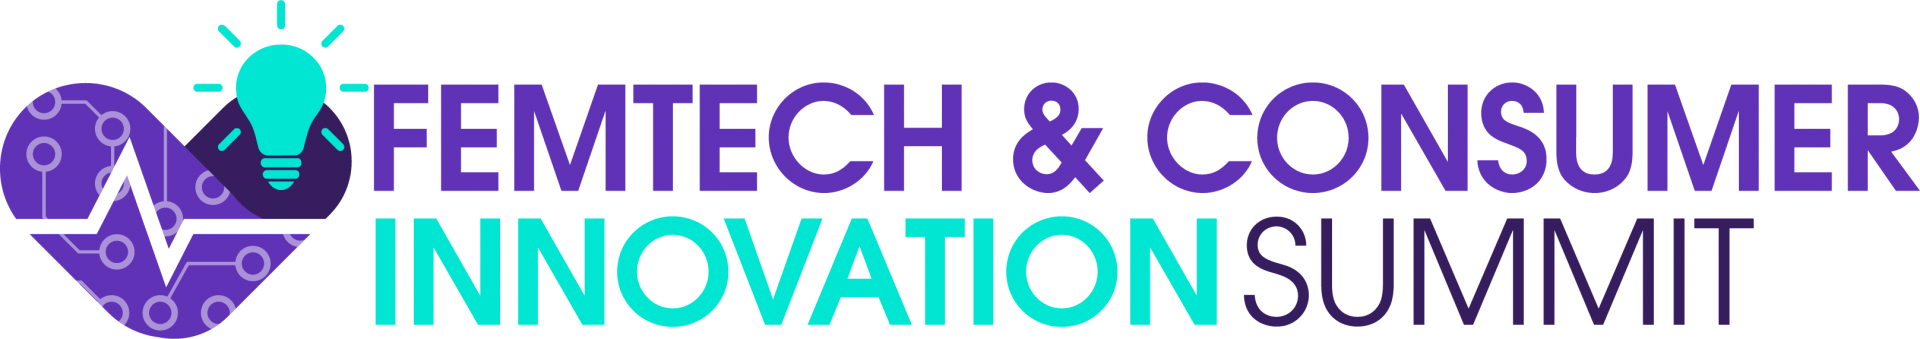 FemTech & Consumer Innovation Summit